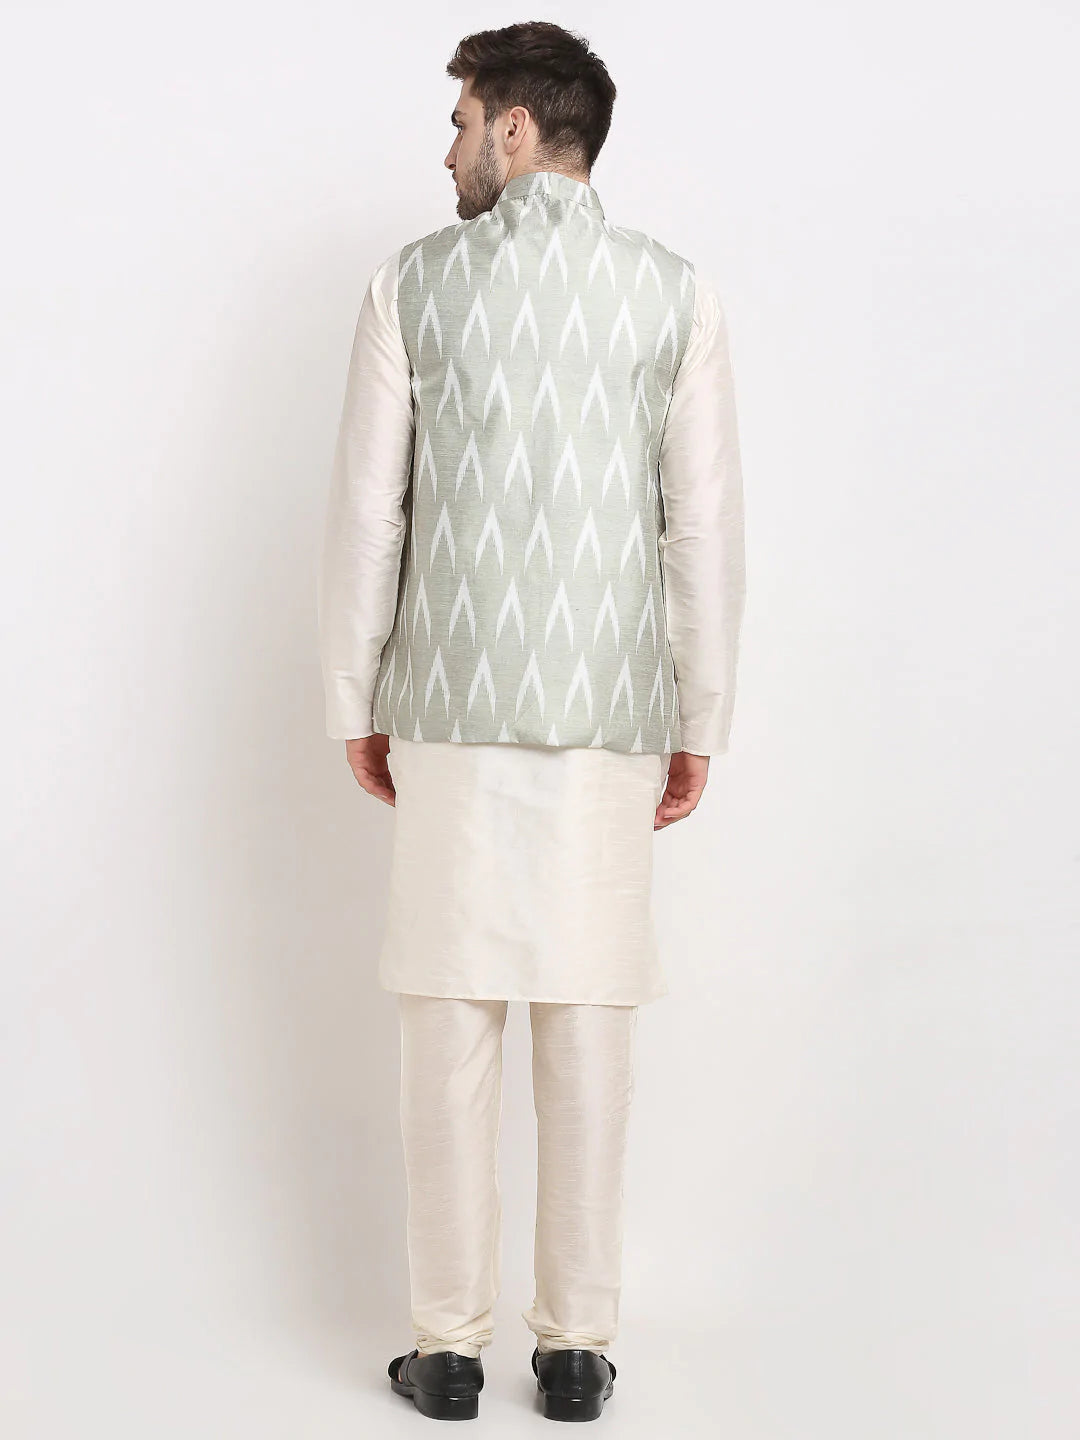 Jompers Men's Ikat Print Nehru Jacket & Kurta Pyjama ( JOKPWC W-D 4030Grey )